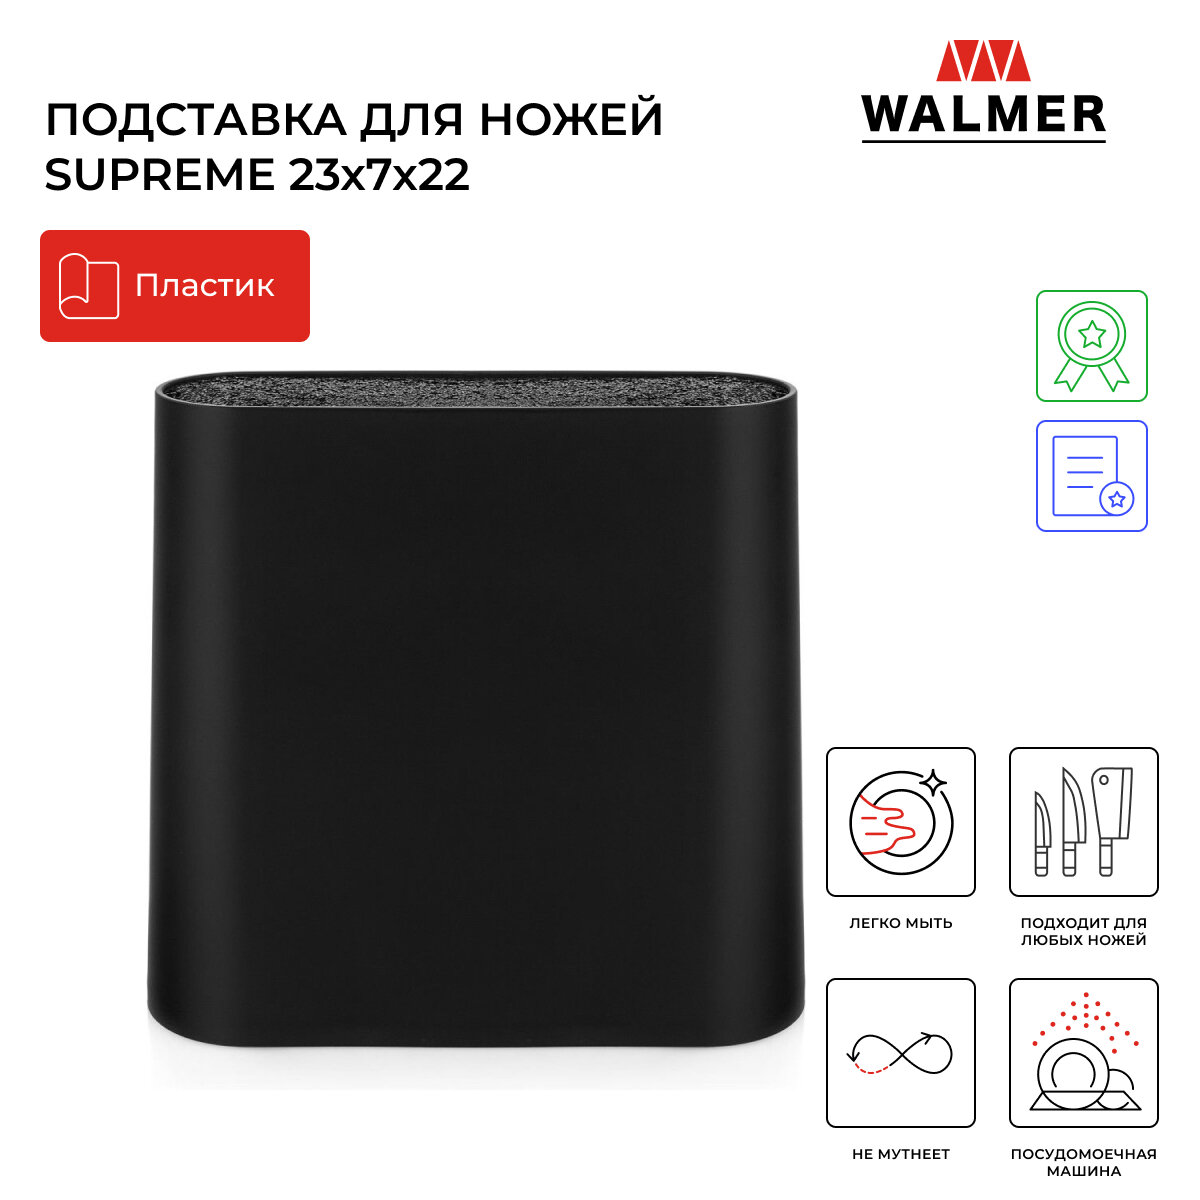 Подставка для ножей Walmer Supreme 23x7x22 см цвет черный